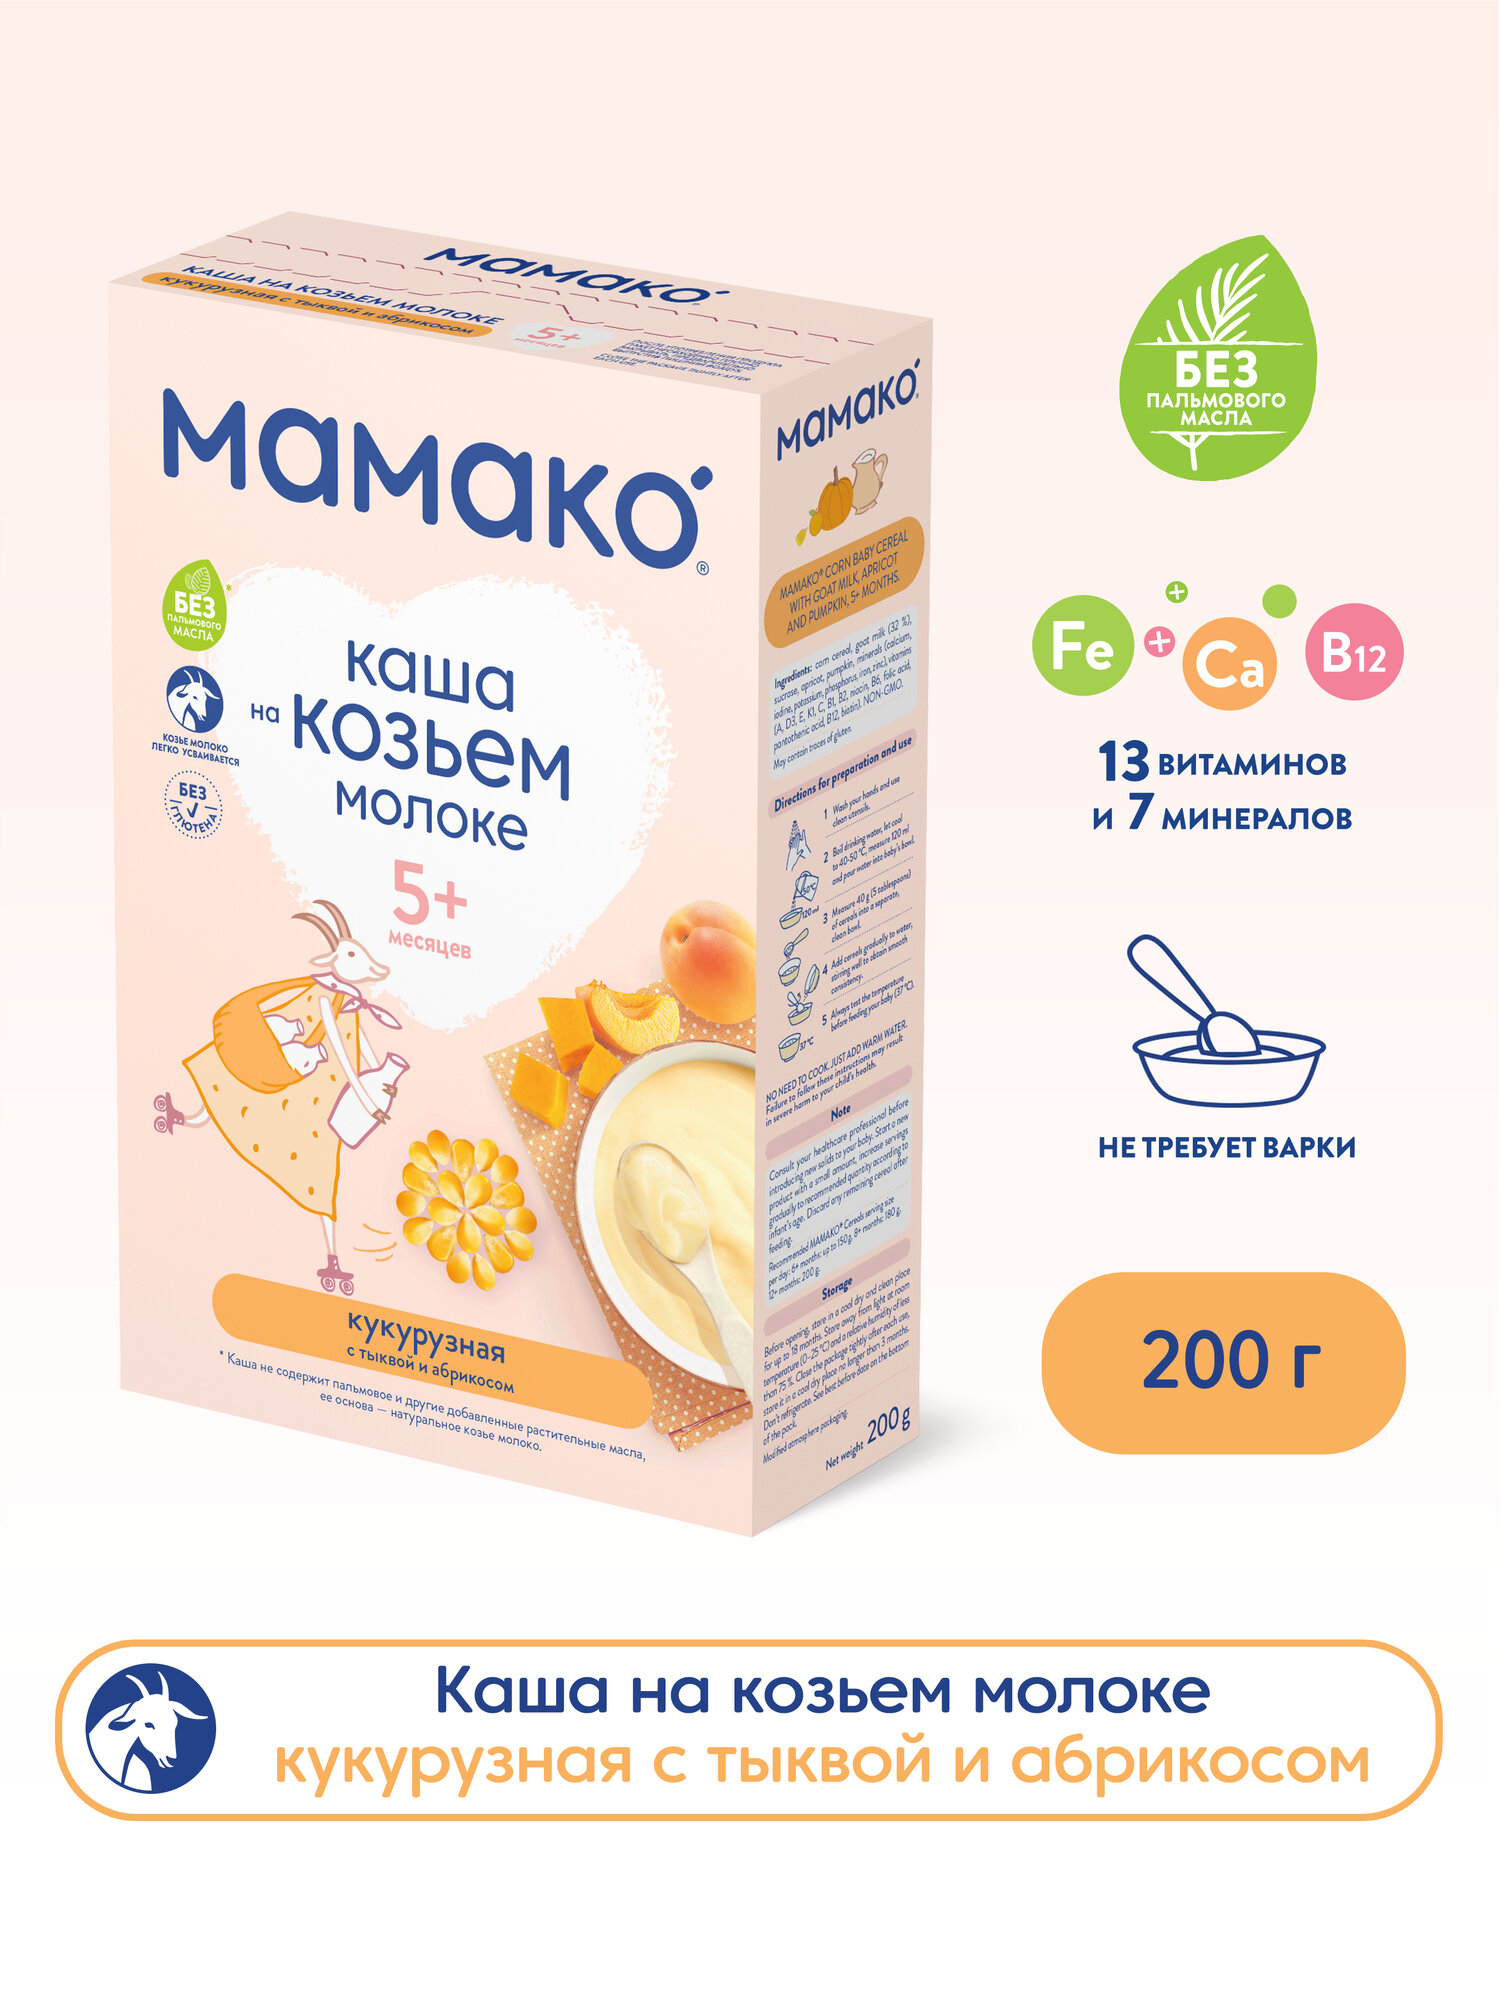 Каша Мамако, молочная кукурузная с тыквой и абрикосом на козьем молоке 200 г - фото №1